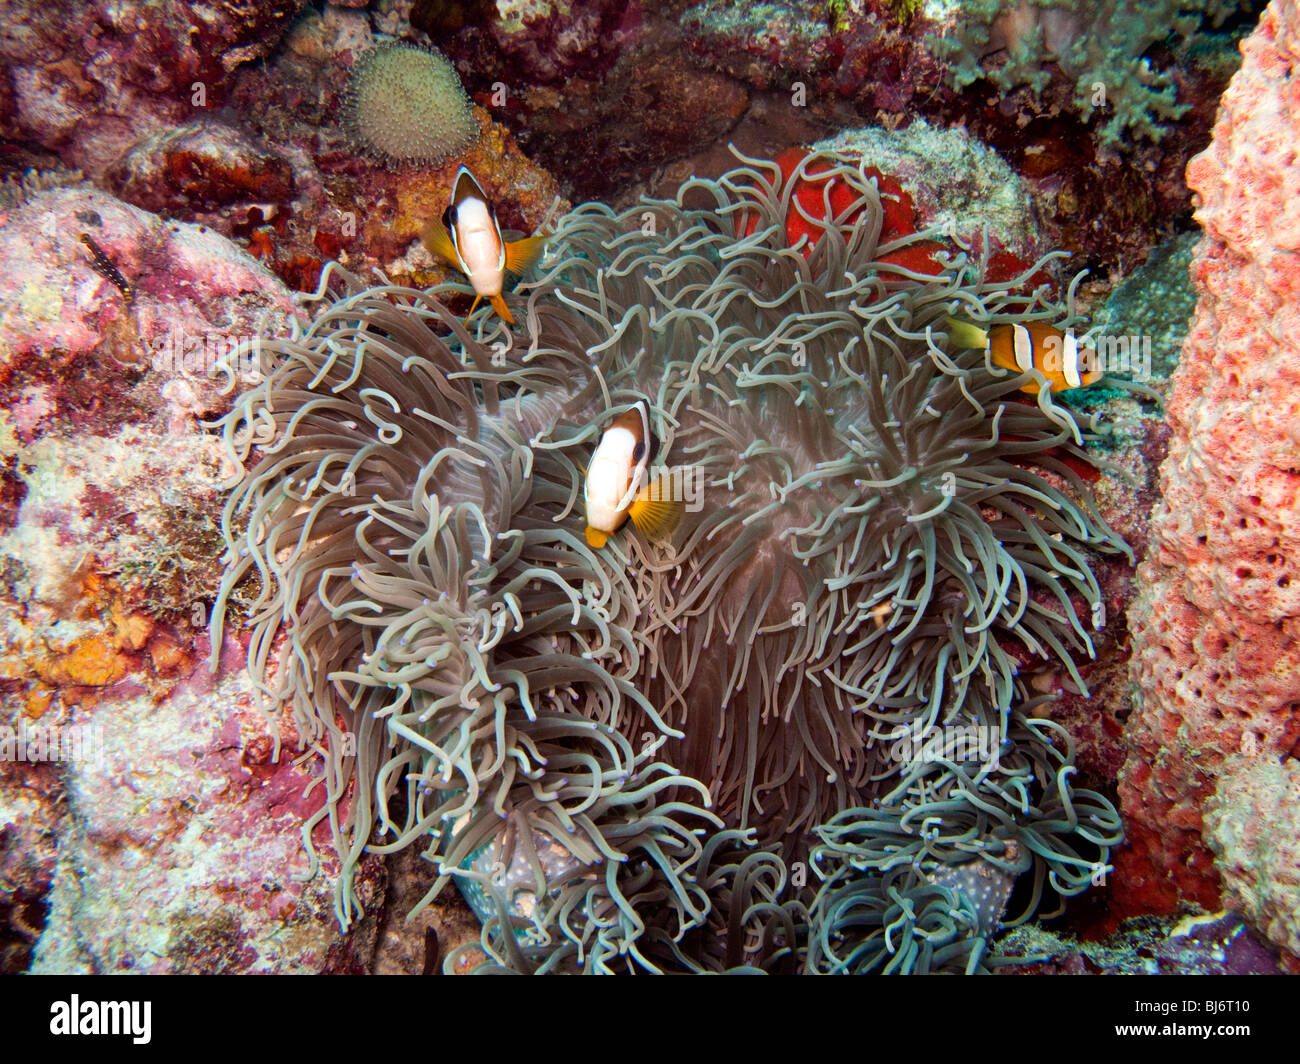 Indonesia, Sulawesi, Wakatobi National Park, anenomefish in Gigantic sea anemone, Stichodactyla gigantea Stock Photo